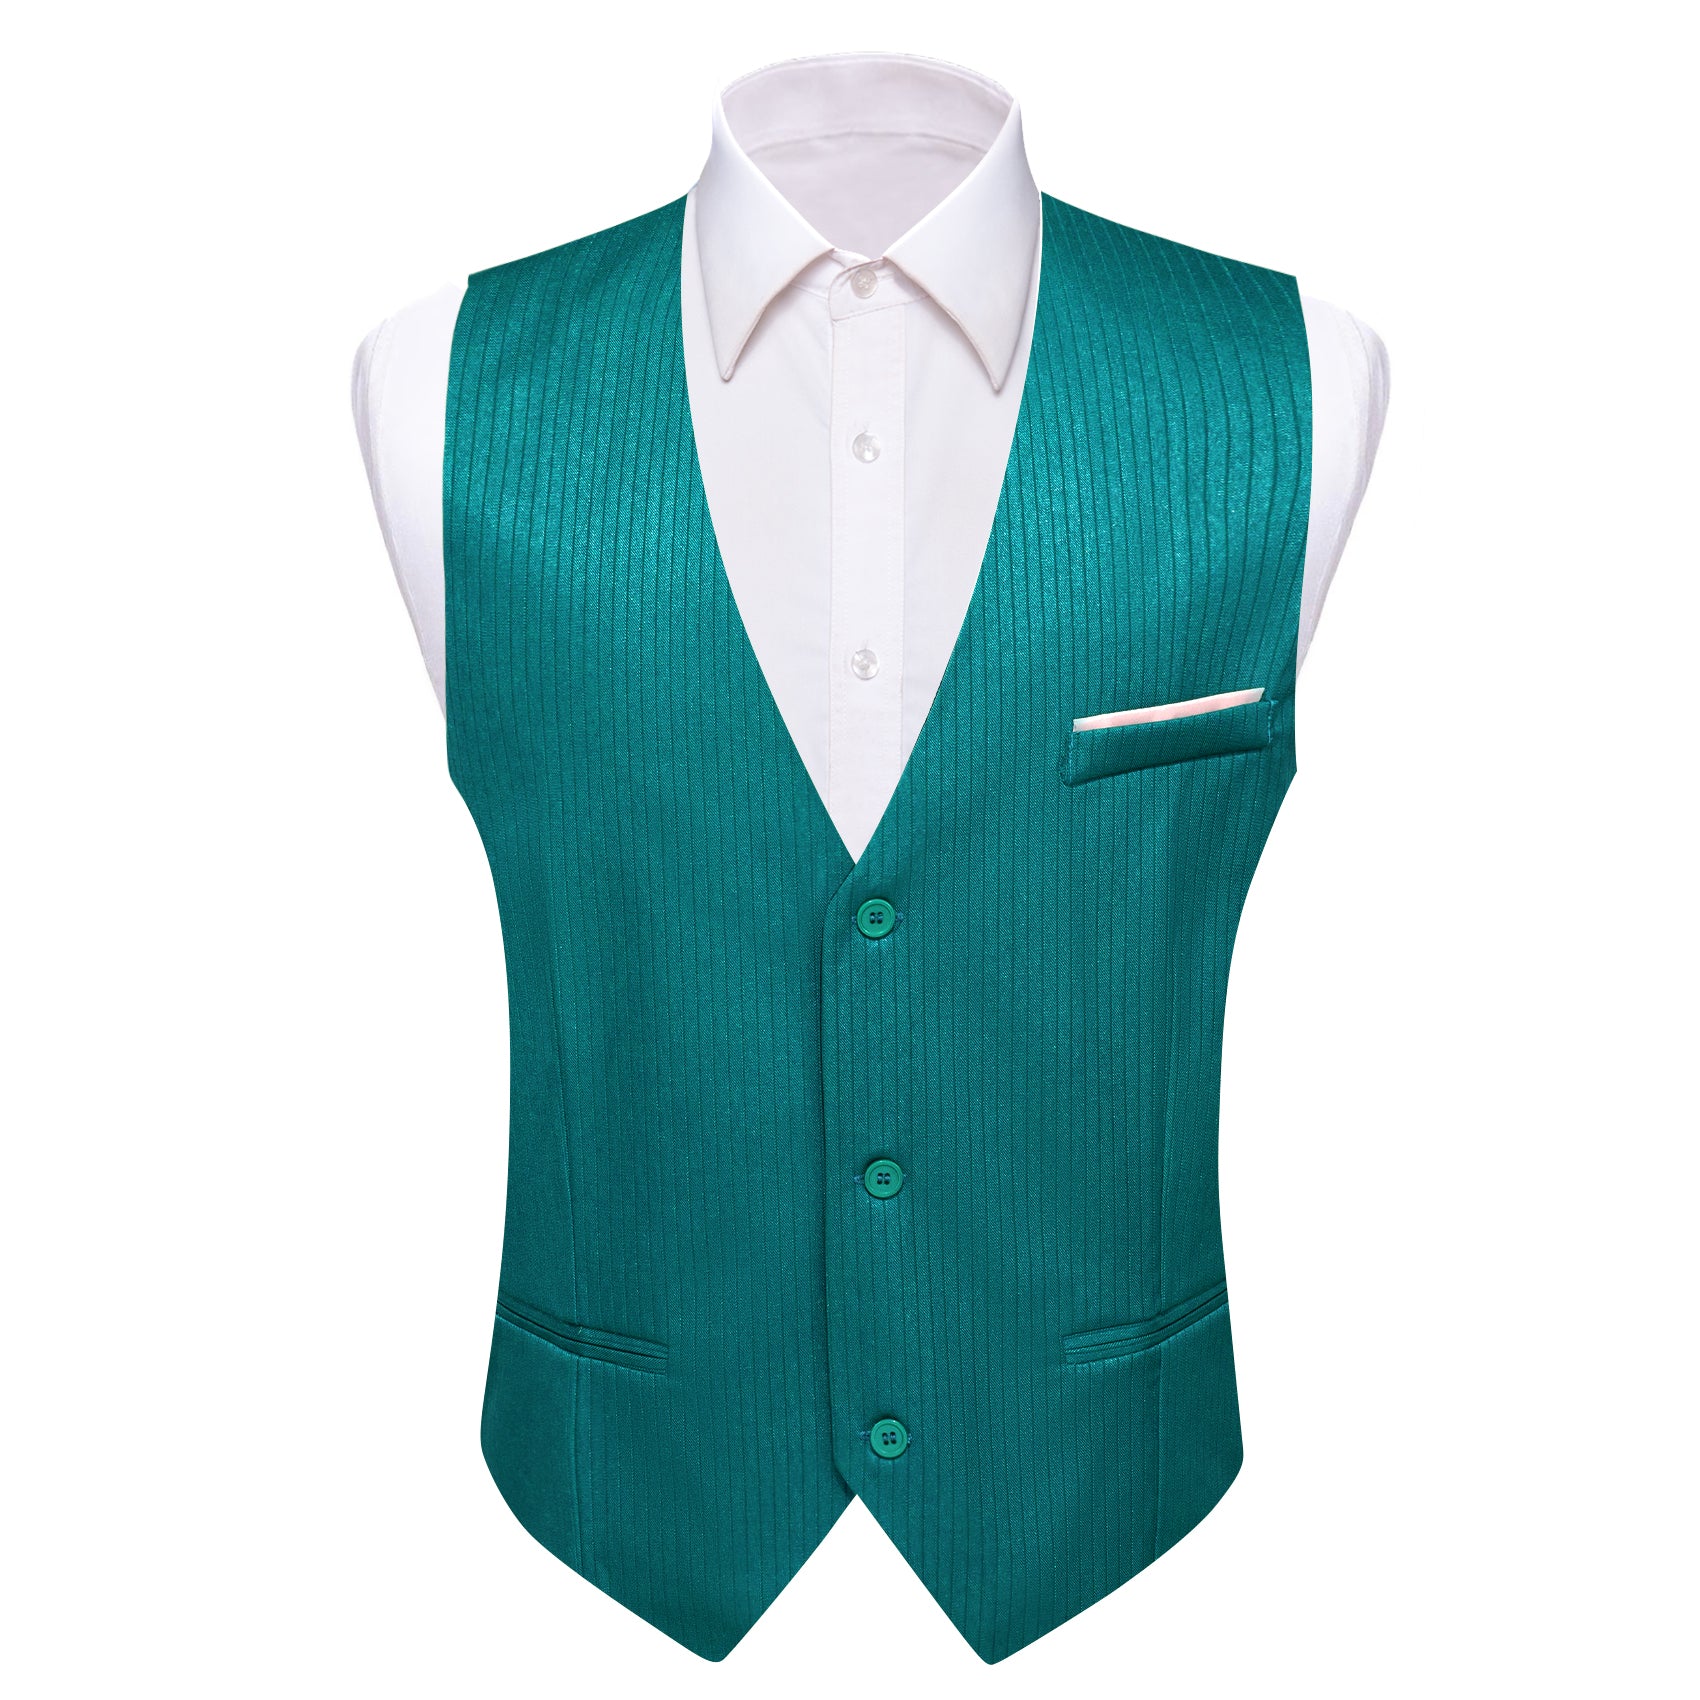 Barry.wang Nile Blue Solid Business Vest Suit